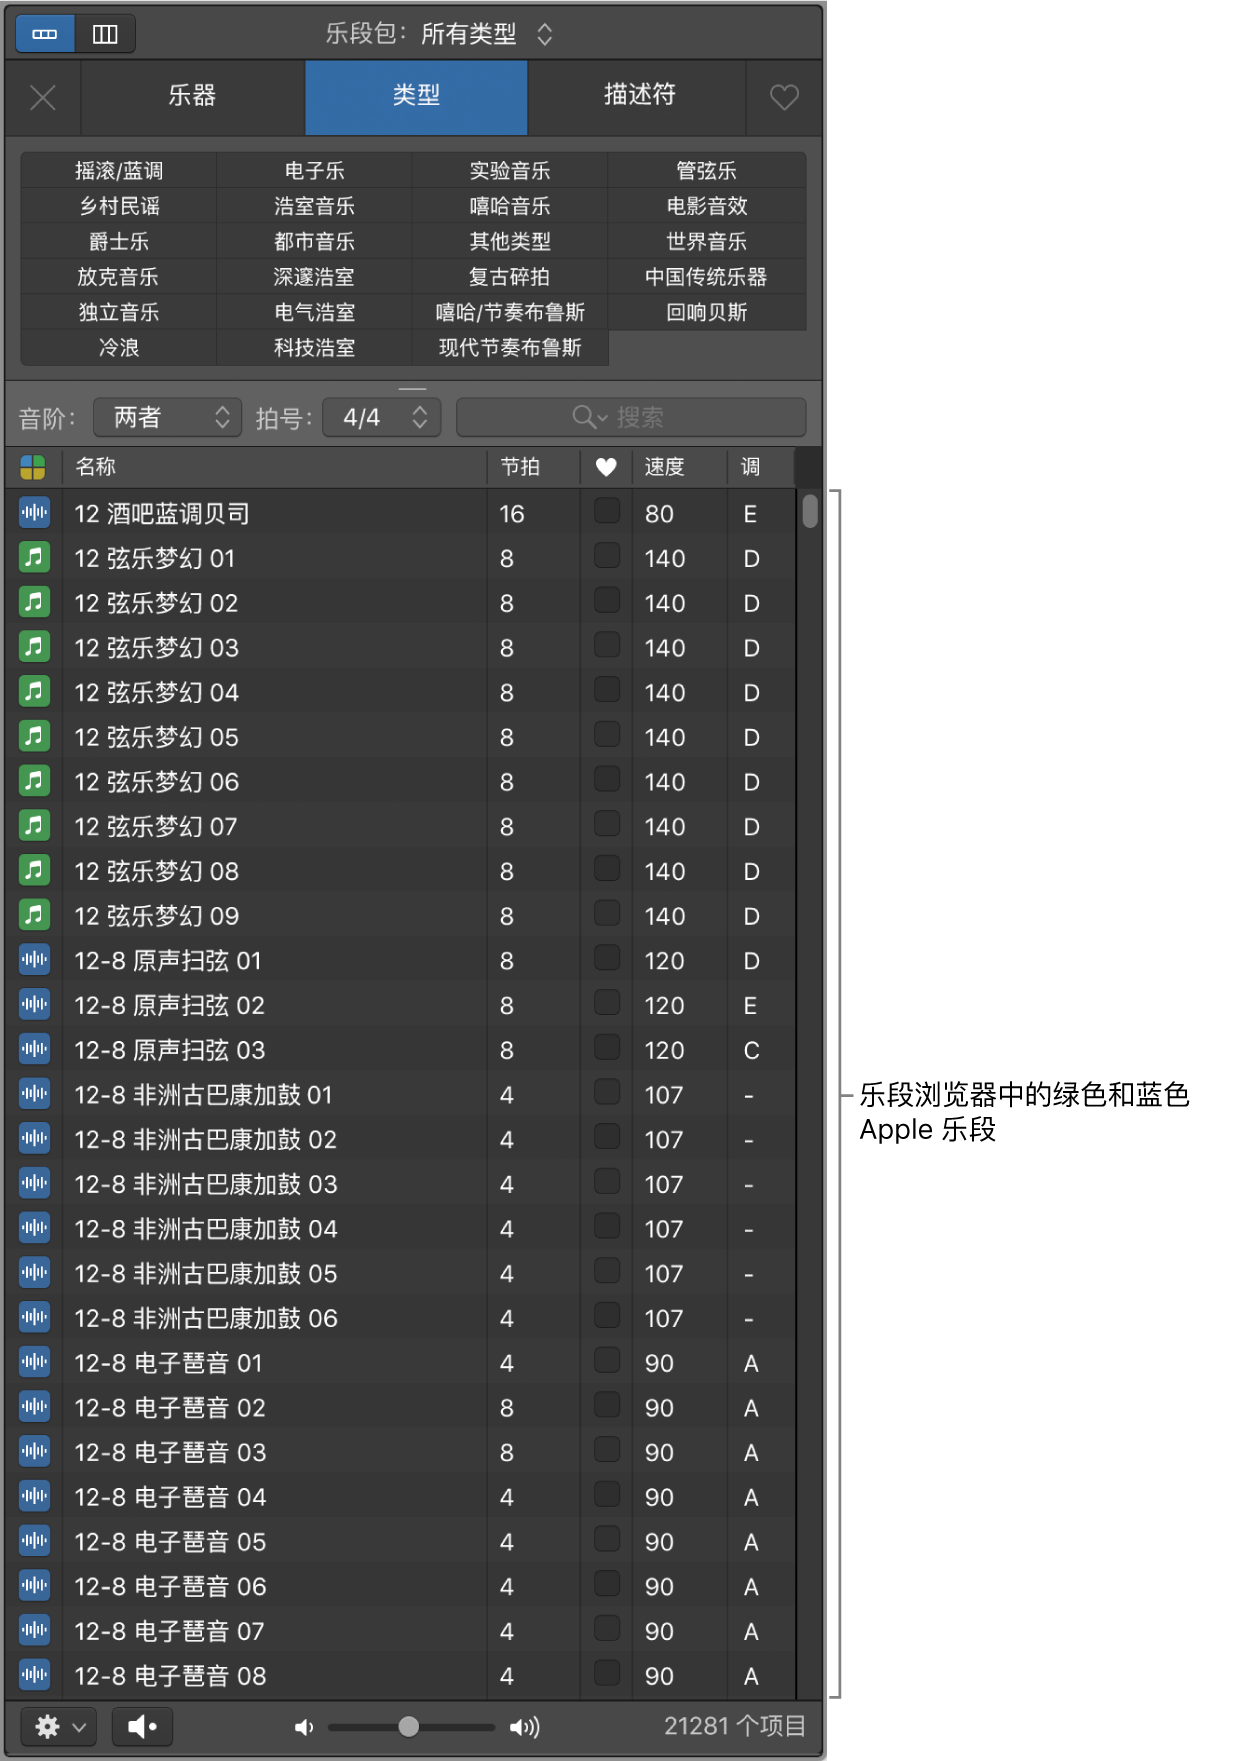 显示软件乐器（绿色）和音频（蓝色）Apple 乐段的乐段浏览器。